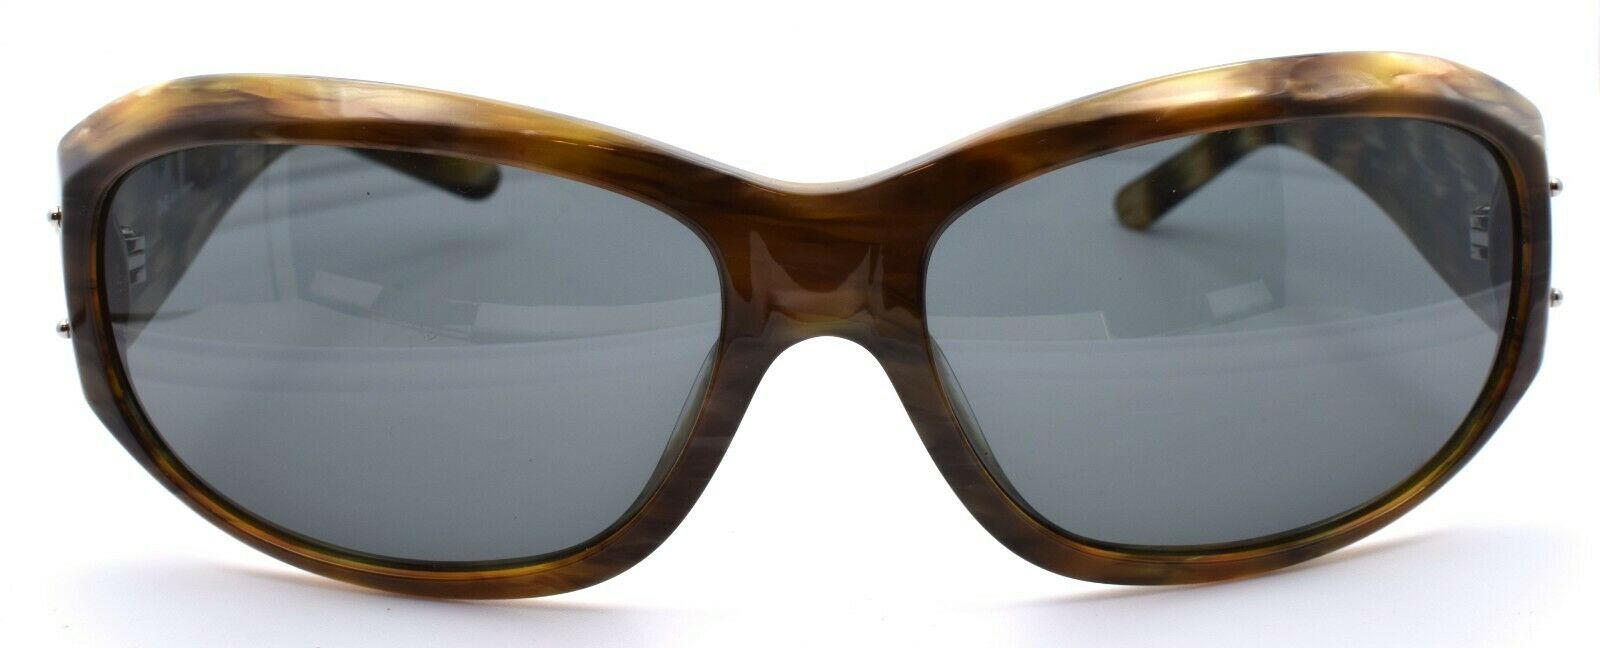 2-Dolce & Gabbana D&G 3029 571/87 Sunglasses Brown Horn / Gray 130 mm-Does not apply-IKSpecs